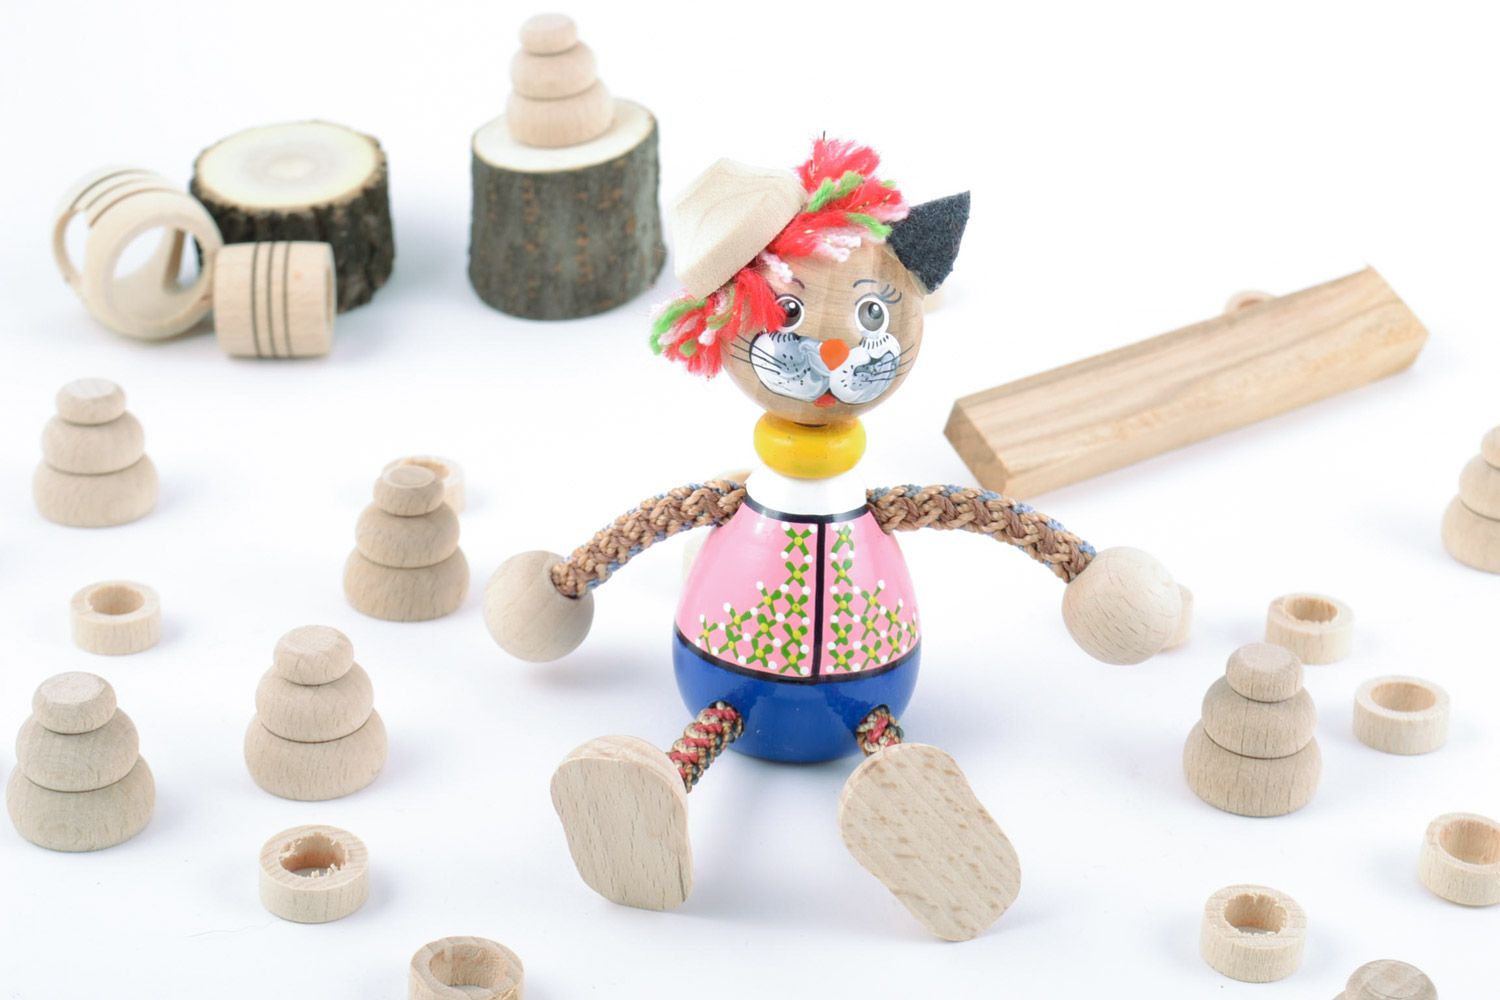 Holz Spielzeug Kater mit Farben bemalt grell Handarbeit Geschenk für Kinder  foto 1